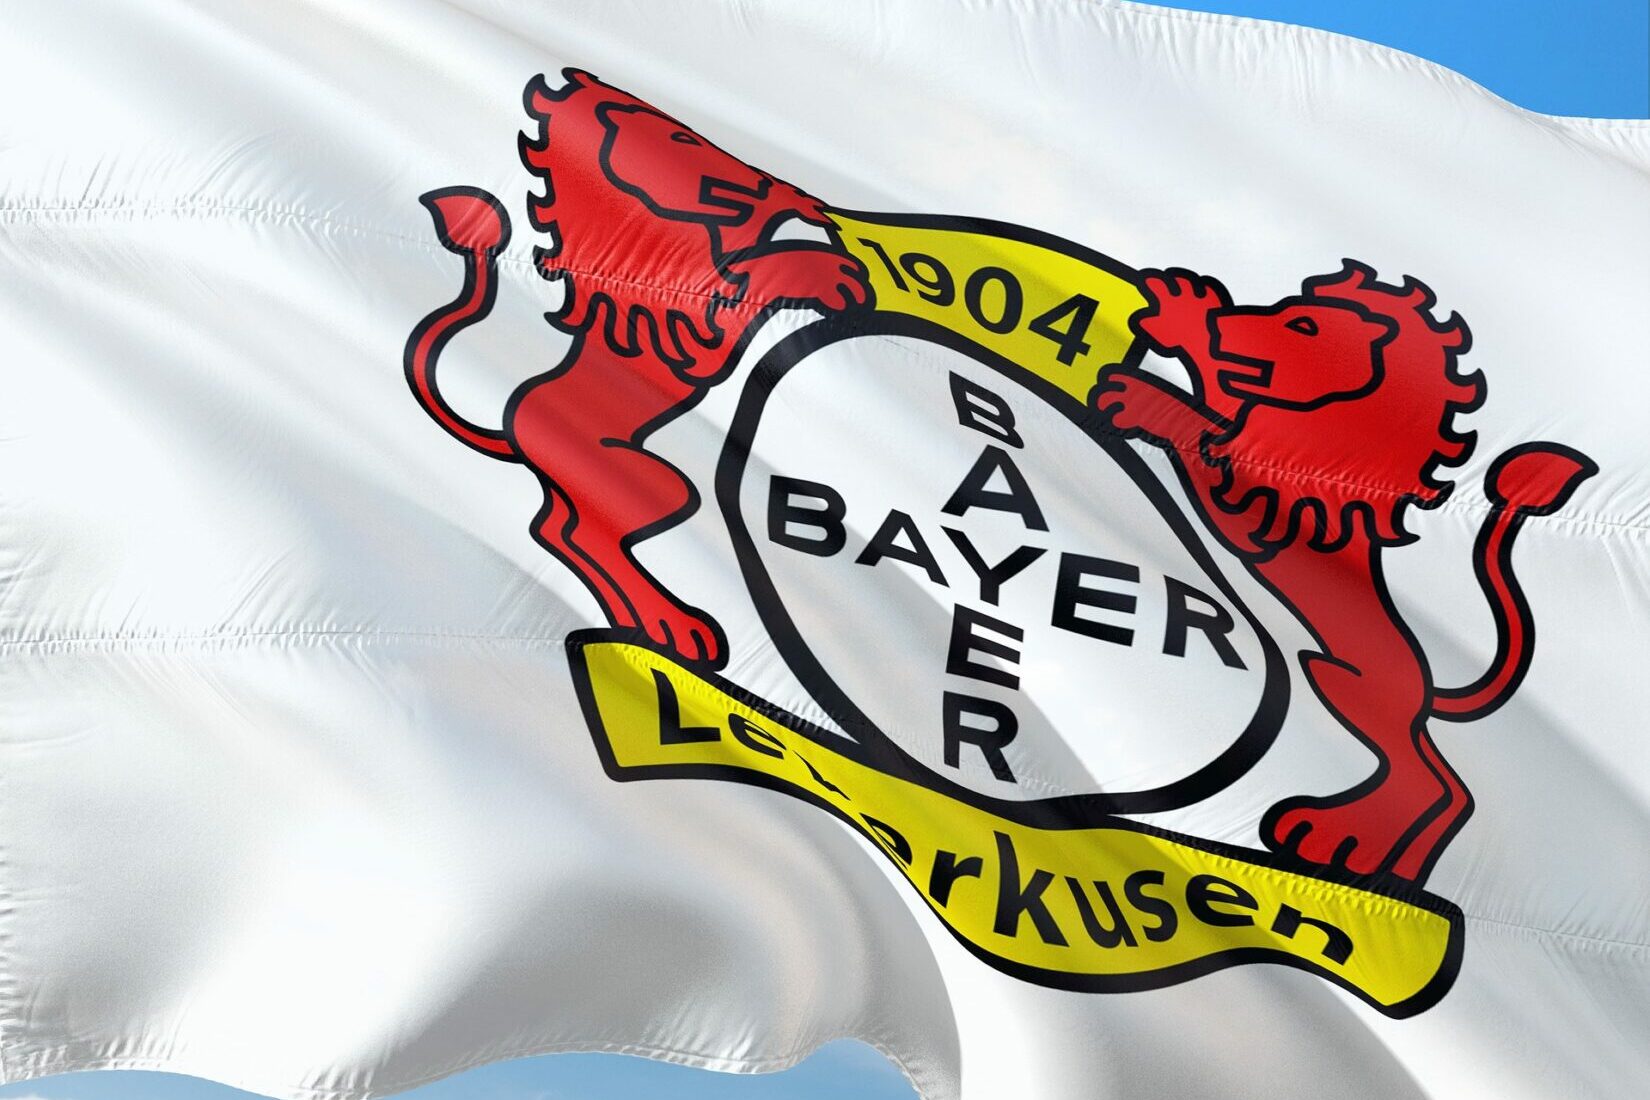 Verlosung: Leverkusen-Ticket zu gewinnen